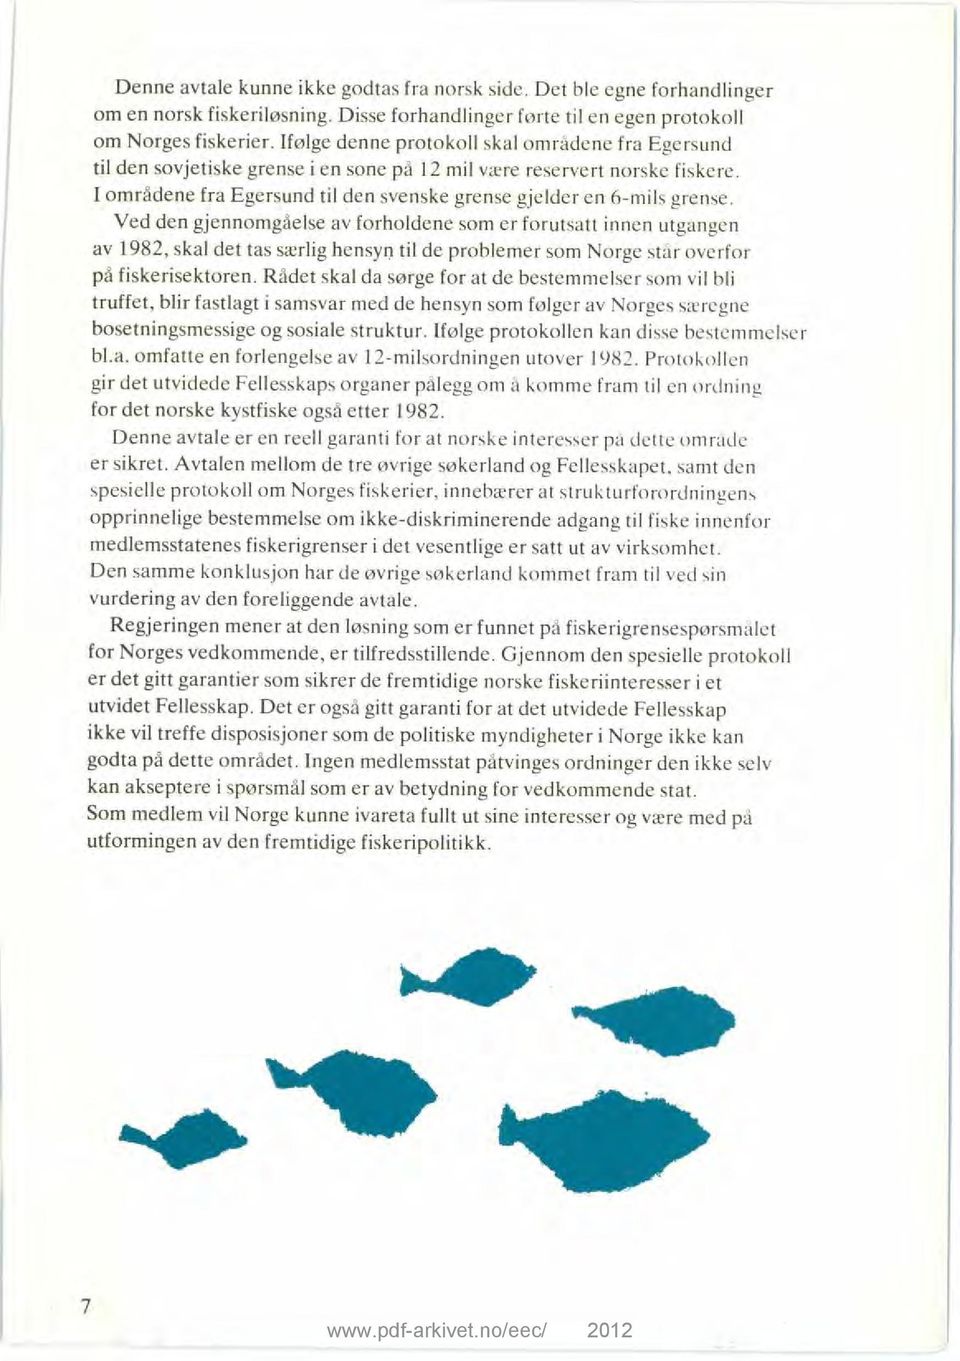 Ved den gjennomgåelse av forholdene som er forutsatt innen utgangen av 1982, skal det tas særlig hensyn til de problemer som Norge står overfor på fiskerisektoren.